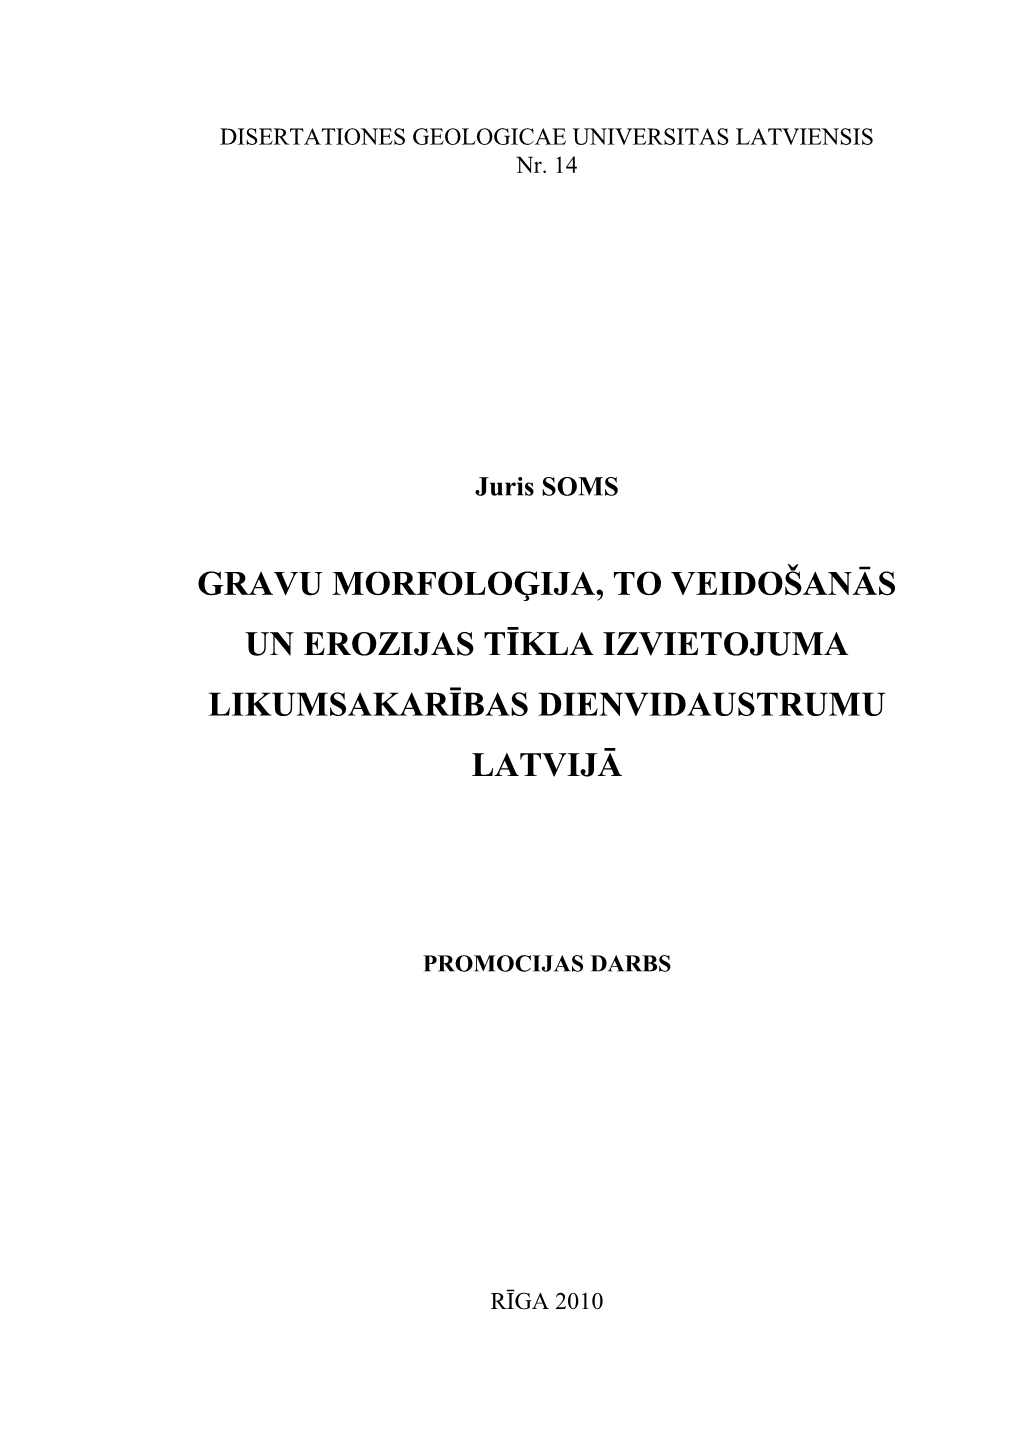 Gravu Morfoloģija, to Veidošanās Un Erozijas Tīkla Izvietojuma Likumsakarības Dienvidaustrumu Latvijā